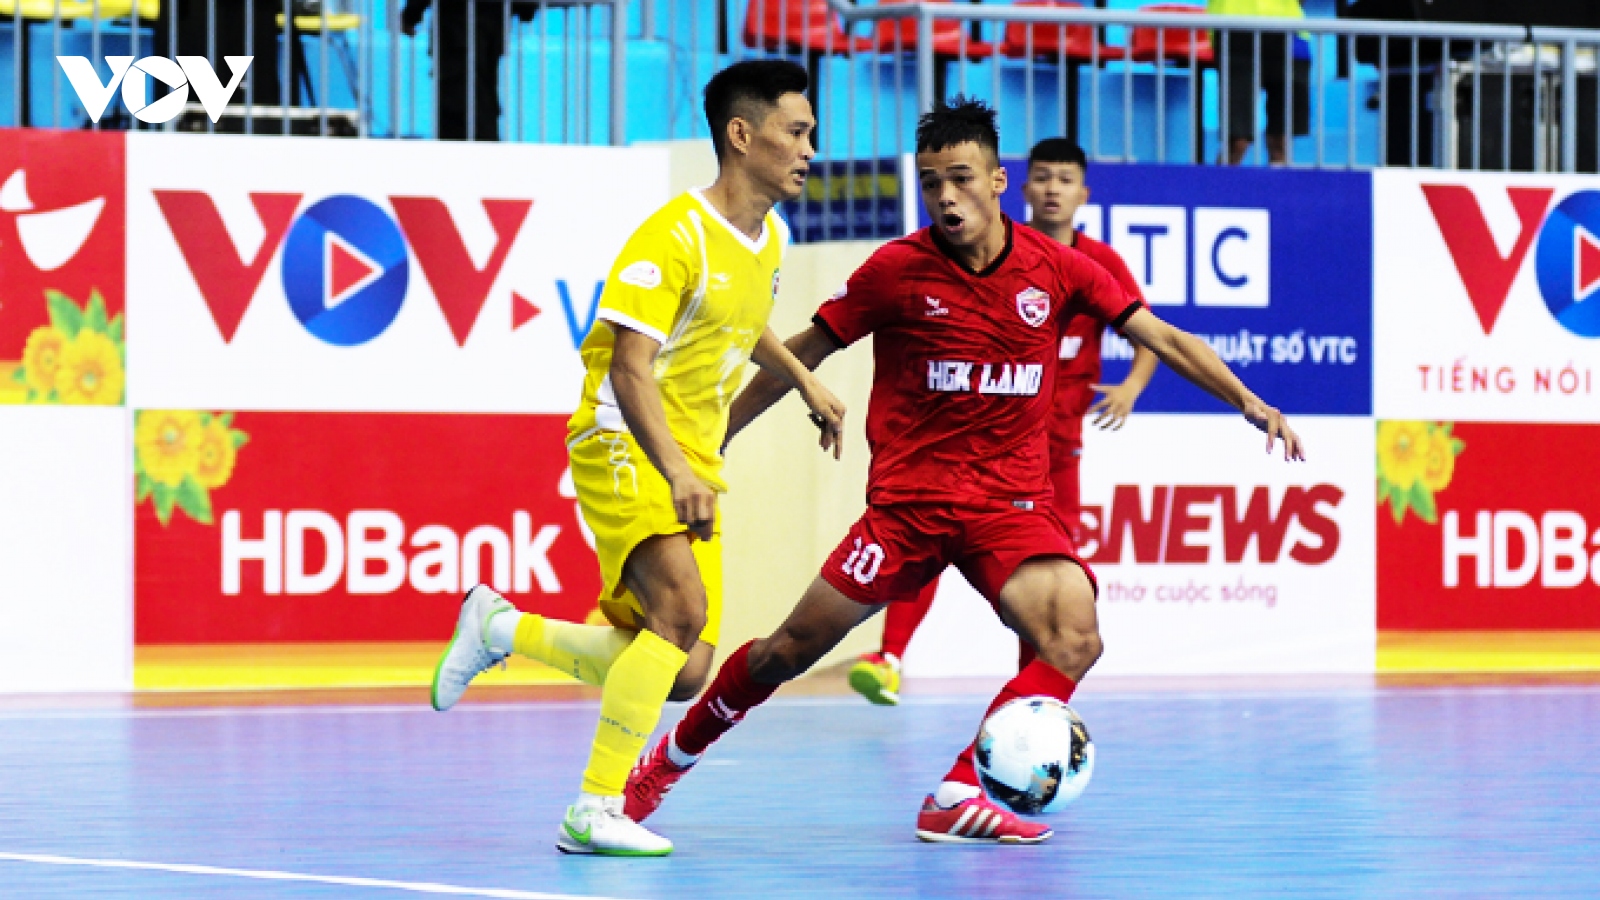 Xem trực tiếp Futsal HDBank VĐQG 2022: Hưng Gia Khang Đắk Lắk - Sài Gòn FC